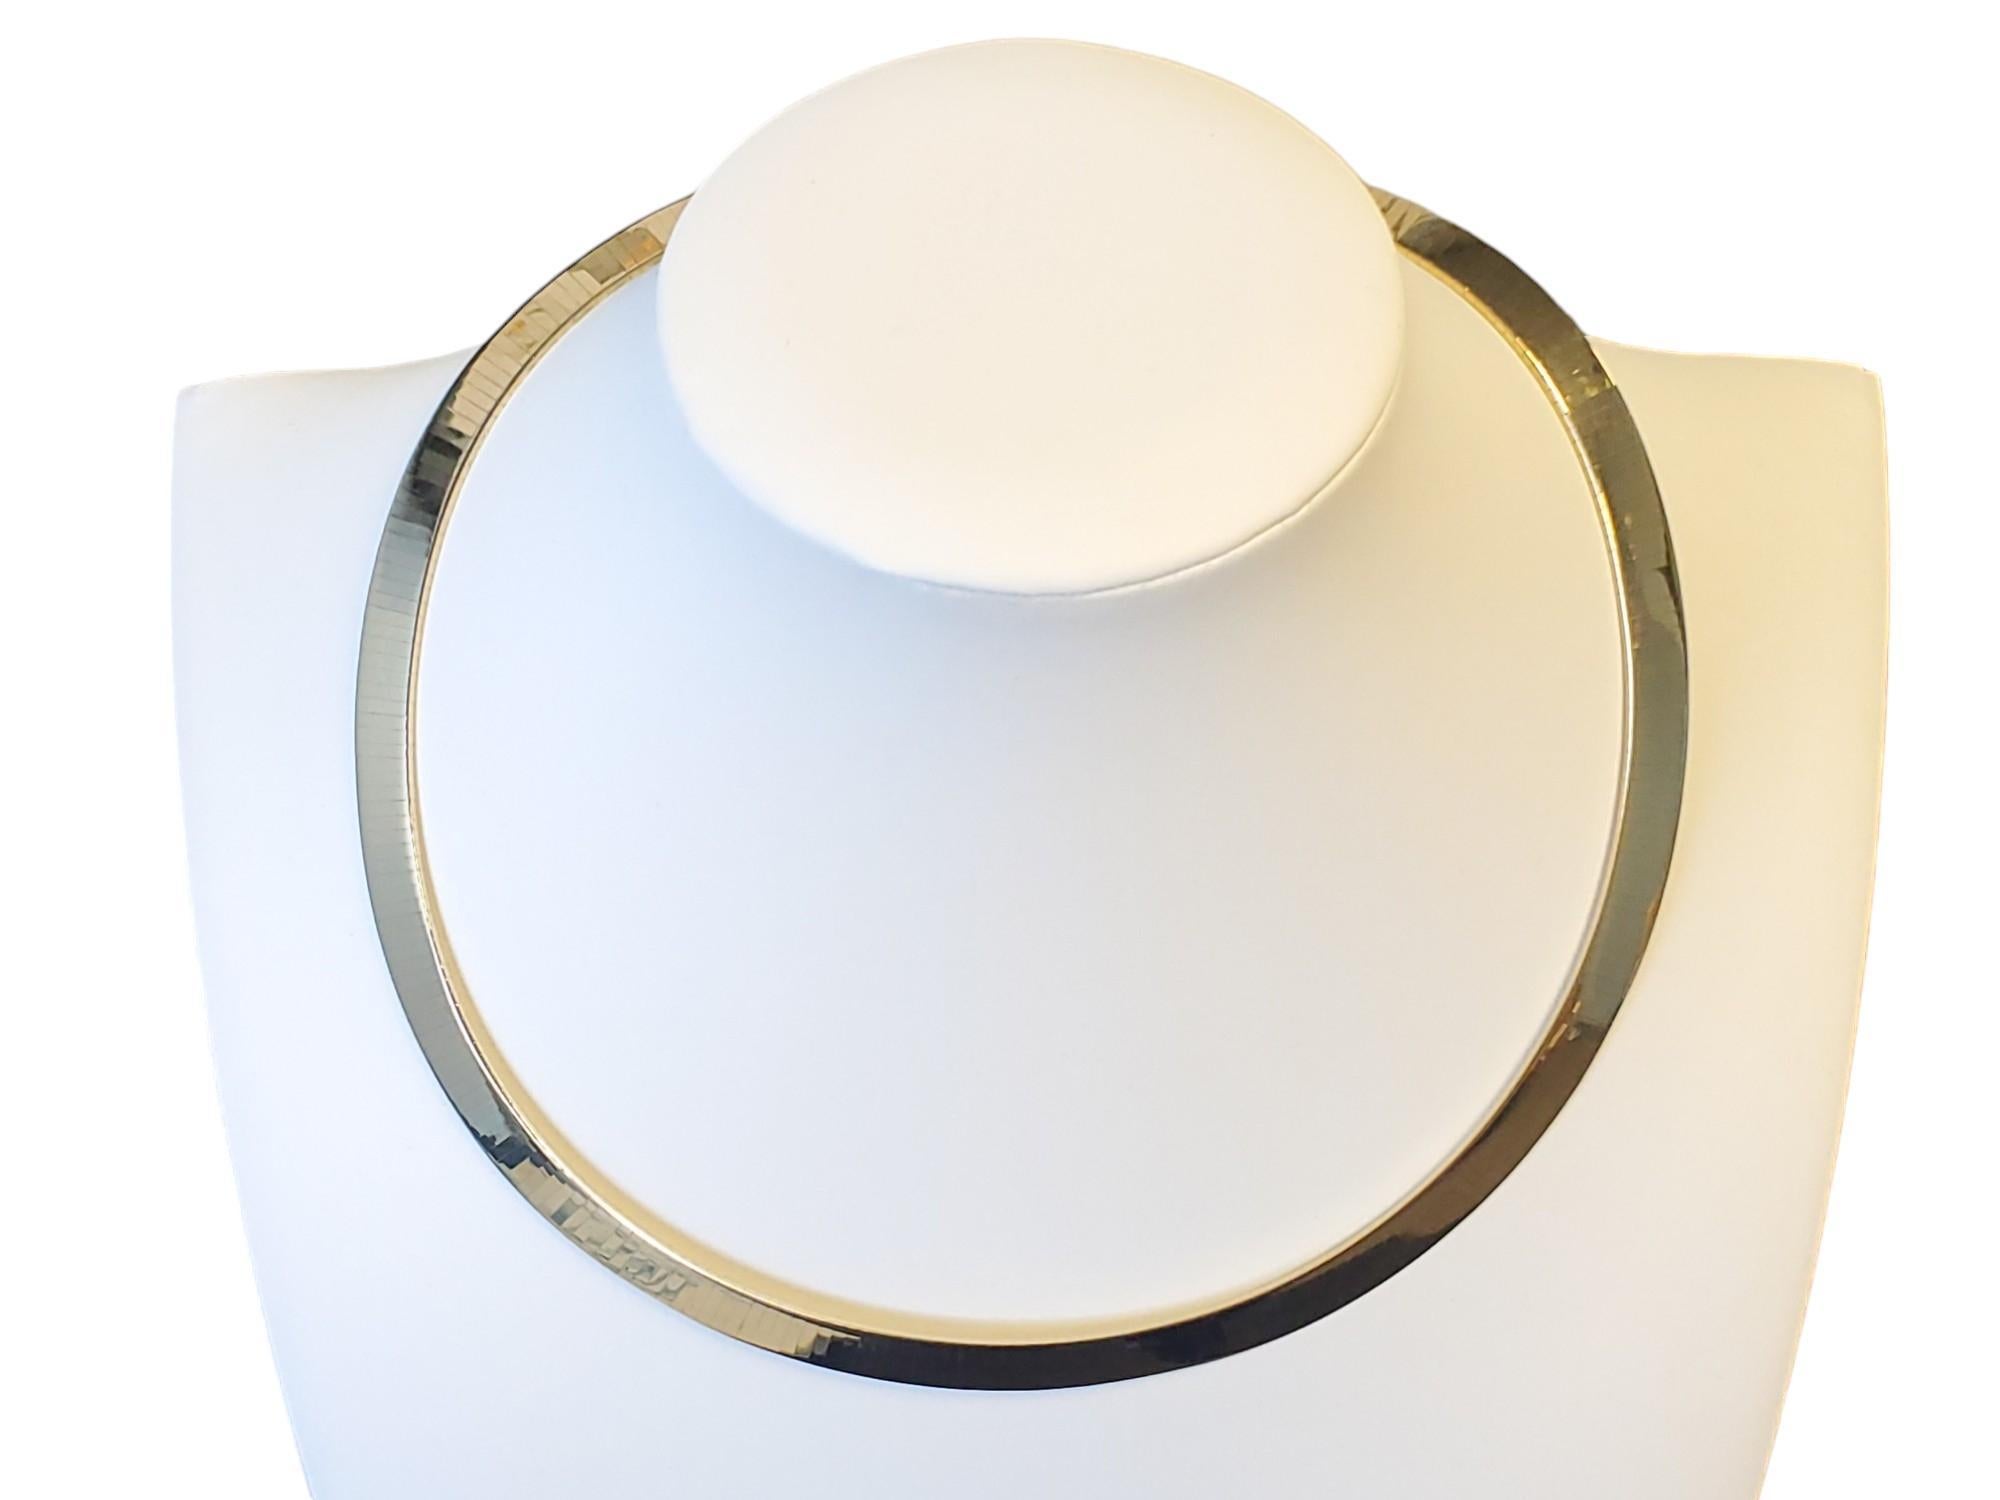 Améliorez votre collection de bijoux avec cet exquis collier Omega vintage en or jaune 14k. Fabriqué en Italie, ce collier de 8 mm de large mesure 16 pouces de long. Il est doté d'un fermoir à verrouillage sécurisé et d'une boucle déployante